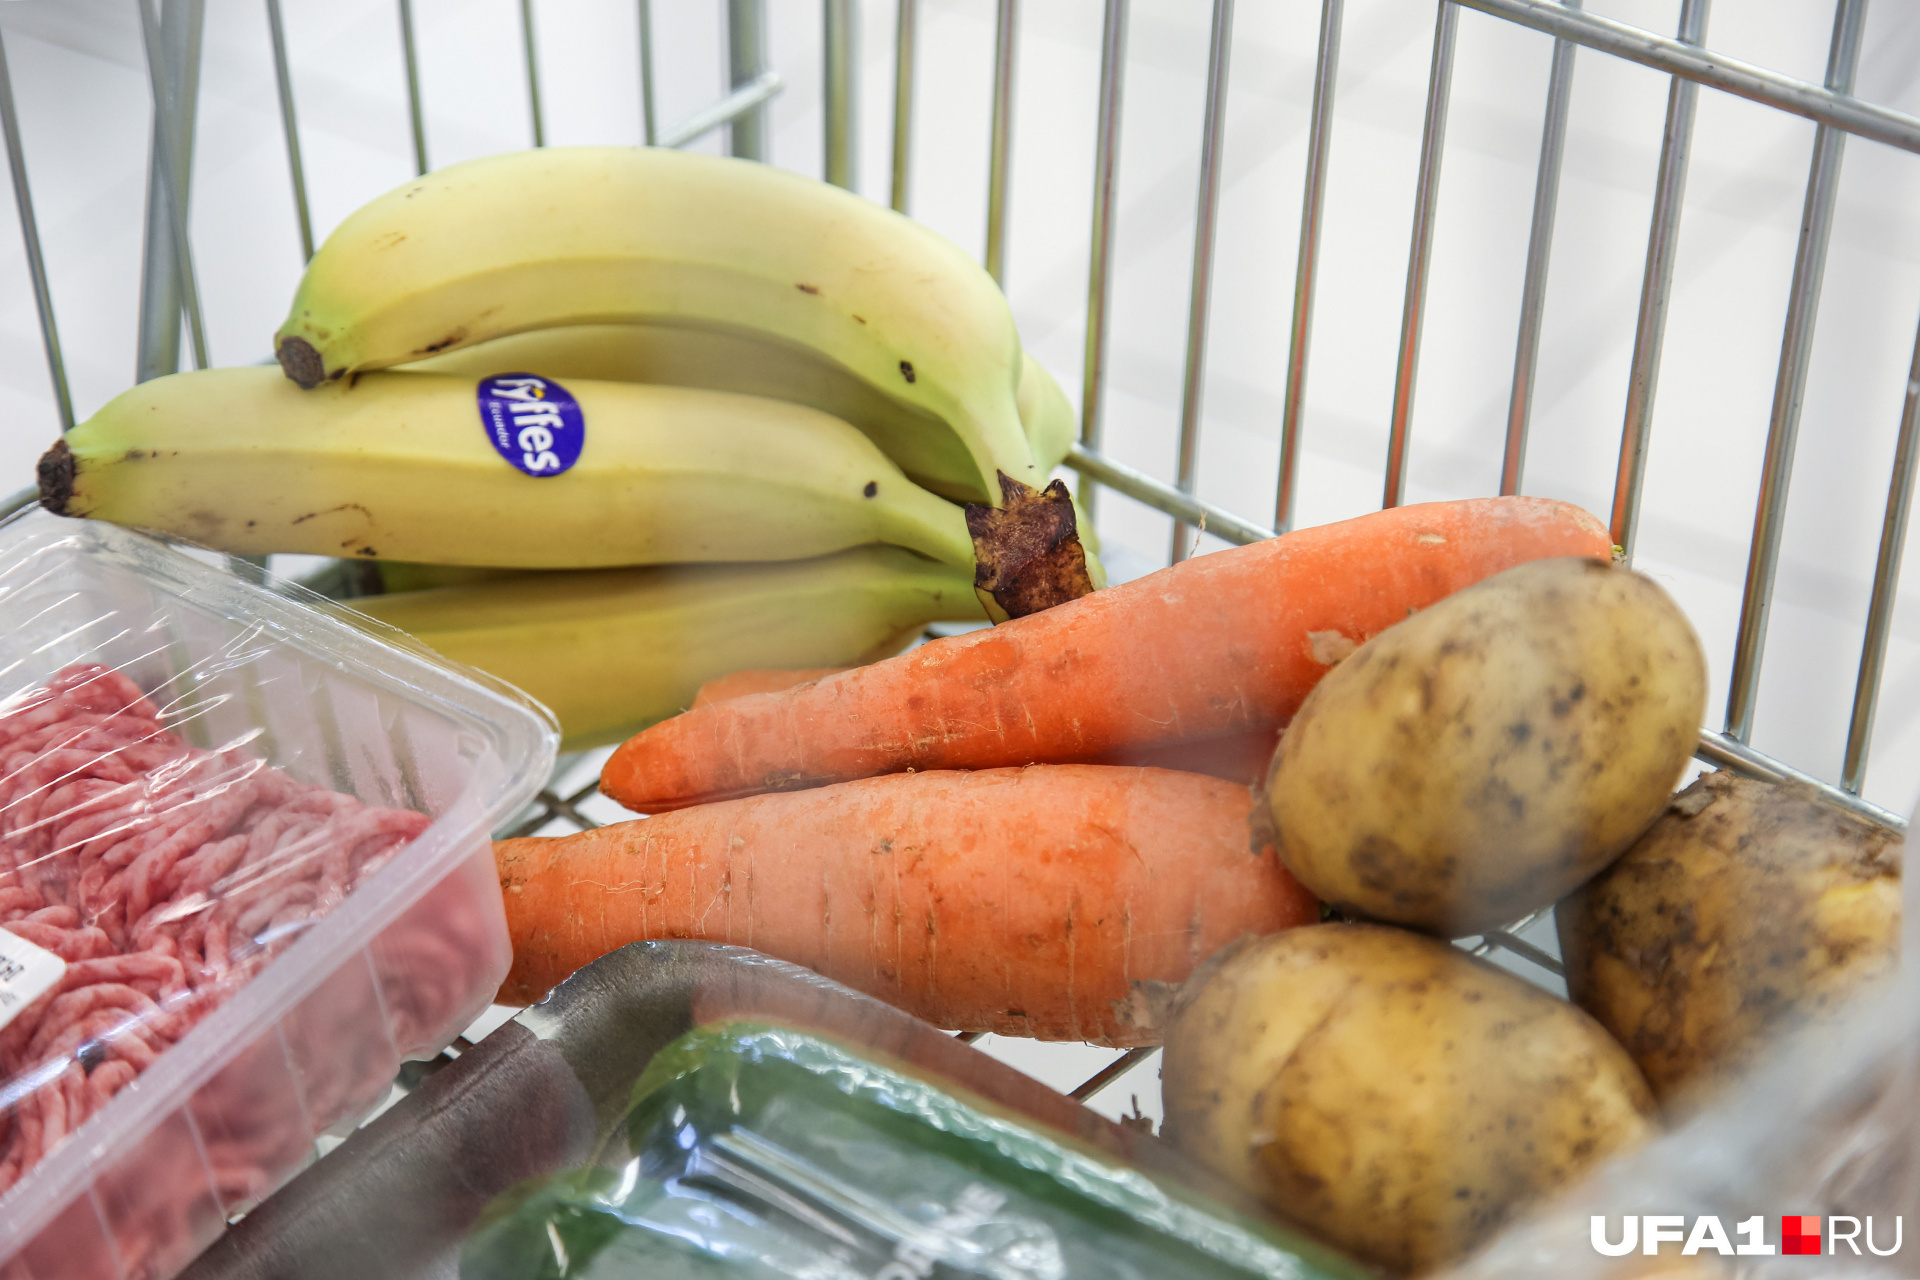 Морковь и бананы решили посоревноваться за звание самого дорогого продукта